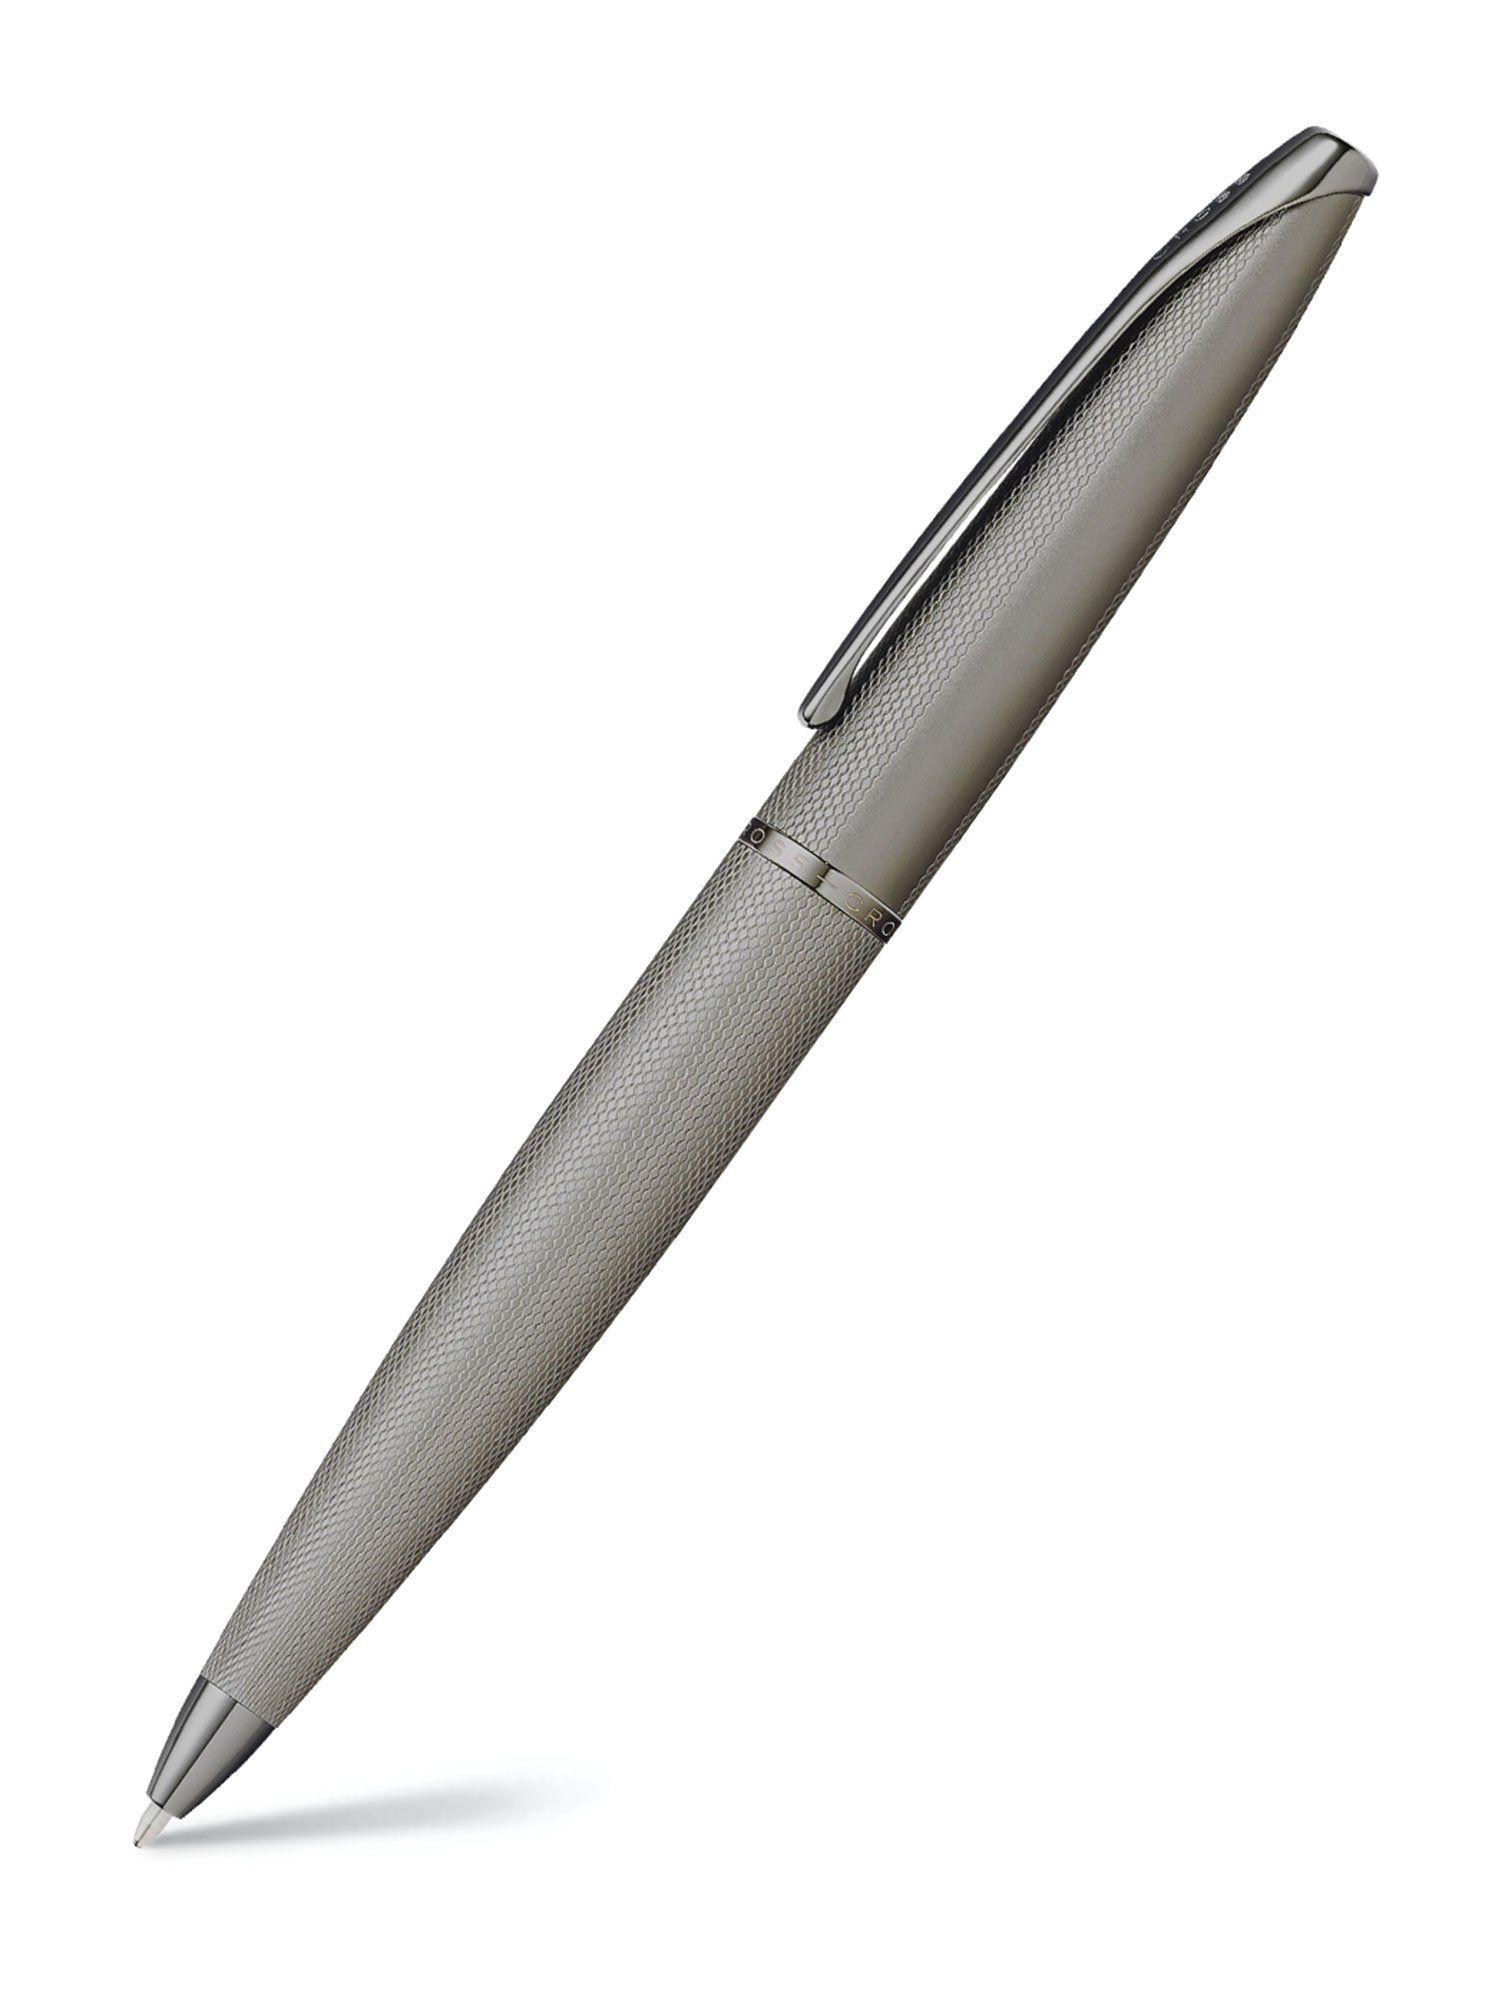 882-46 atx titanium grey pvd ball pen